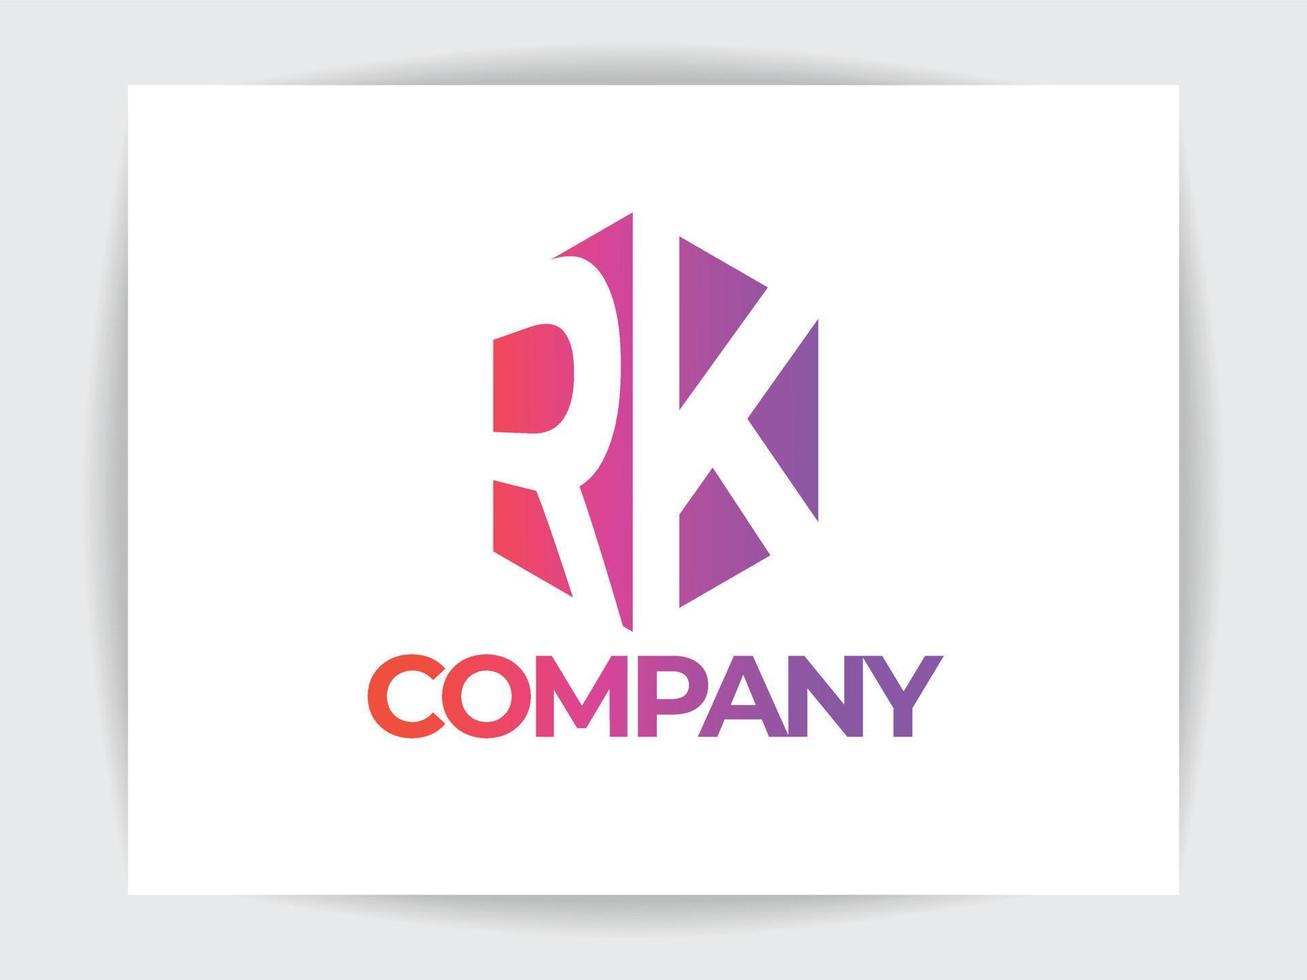 plantilla de diseño de logotipo de letra r y k profesional, con fondo blanco, diseño de logotipo creativo de alta calidad. vector